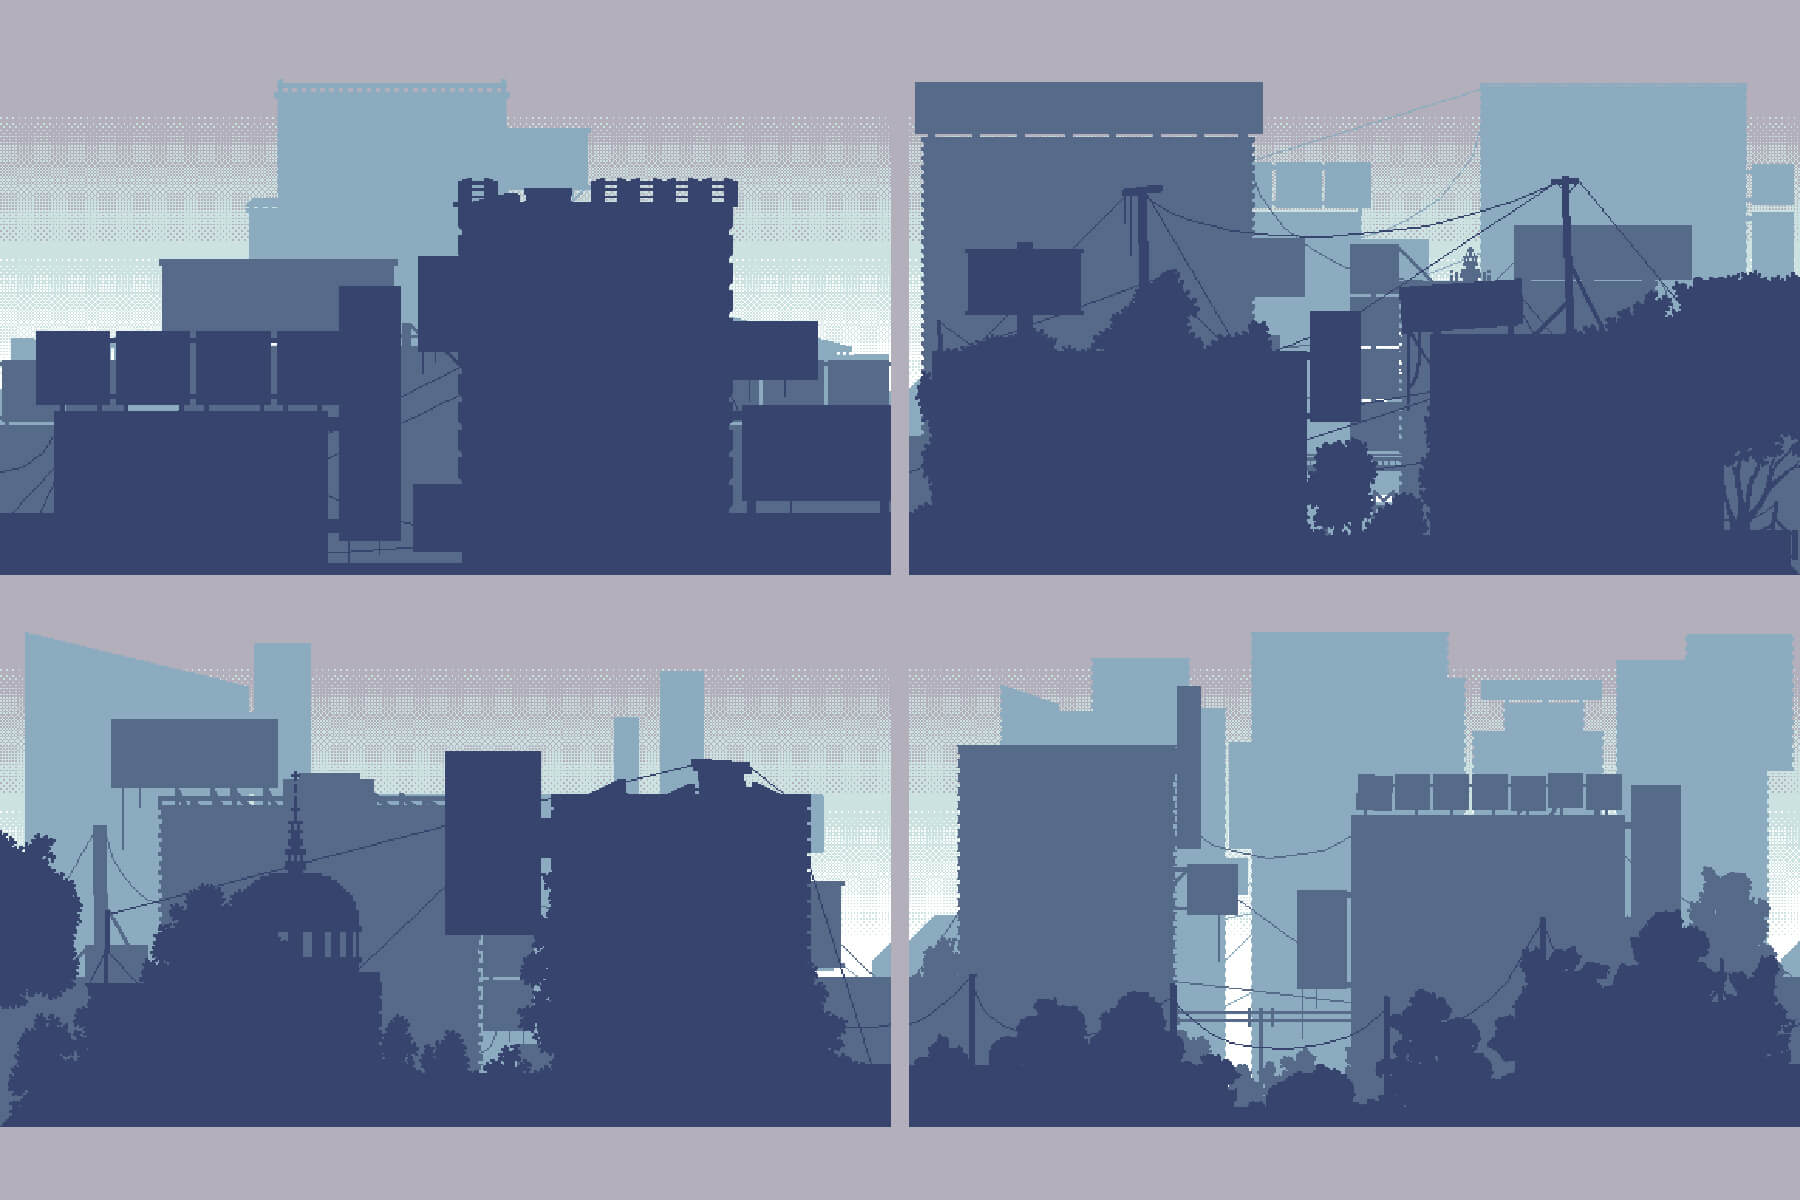 2D Pixel Art CYBERPUNK Backgrounds, 2D Building